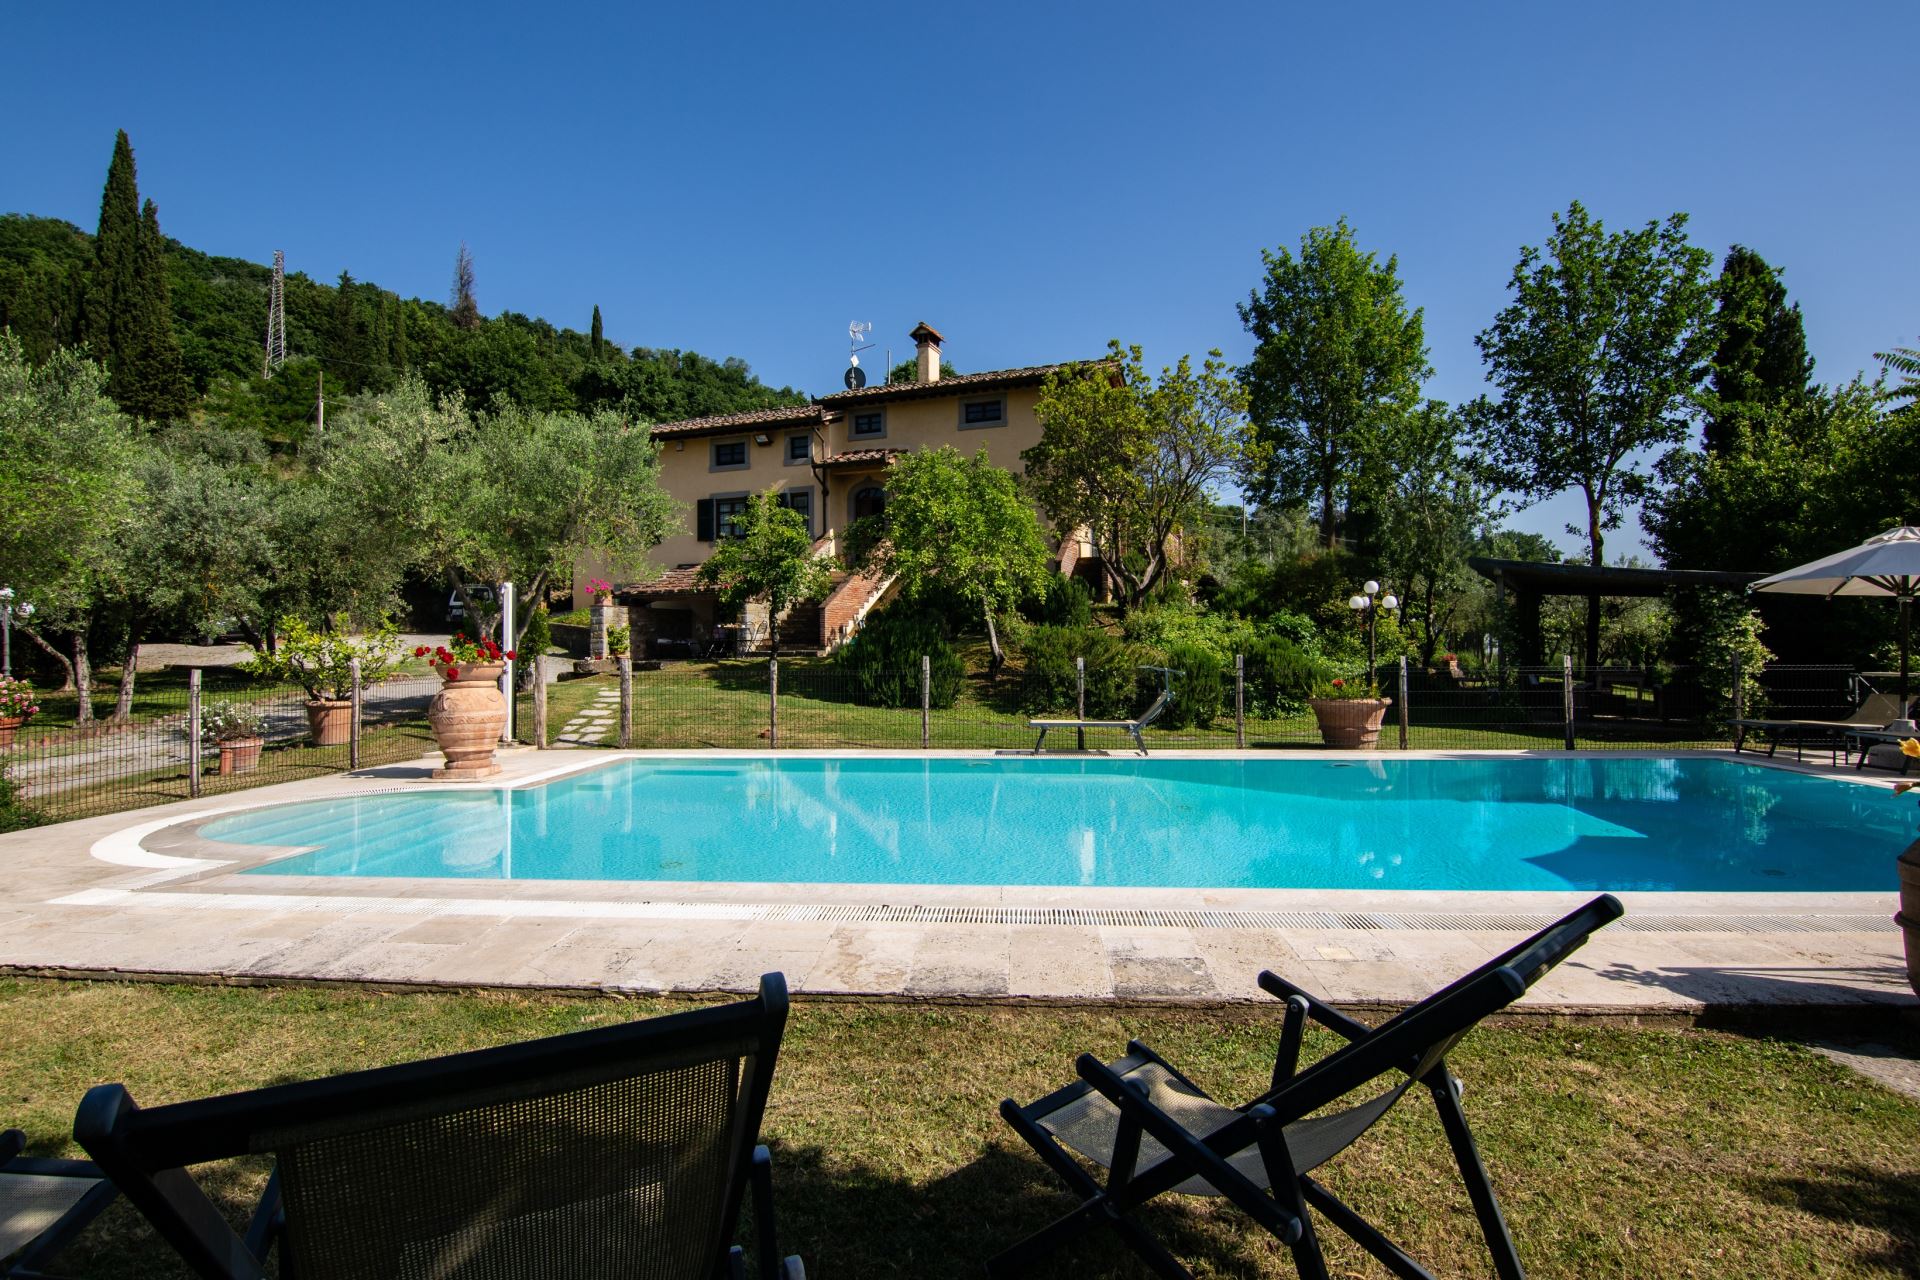 454_7f703ef_Casa Degli Ulivi, vakantiewoning met omheind prive zwembad, Toscane, Arezzo, villa (11)